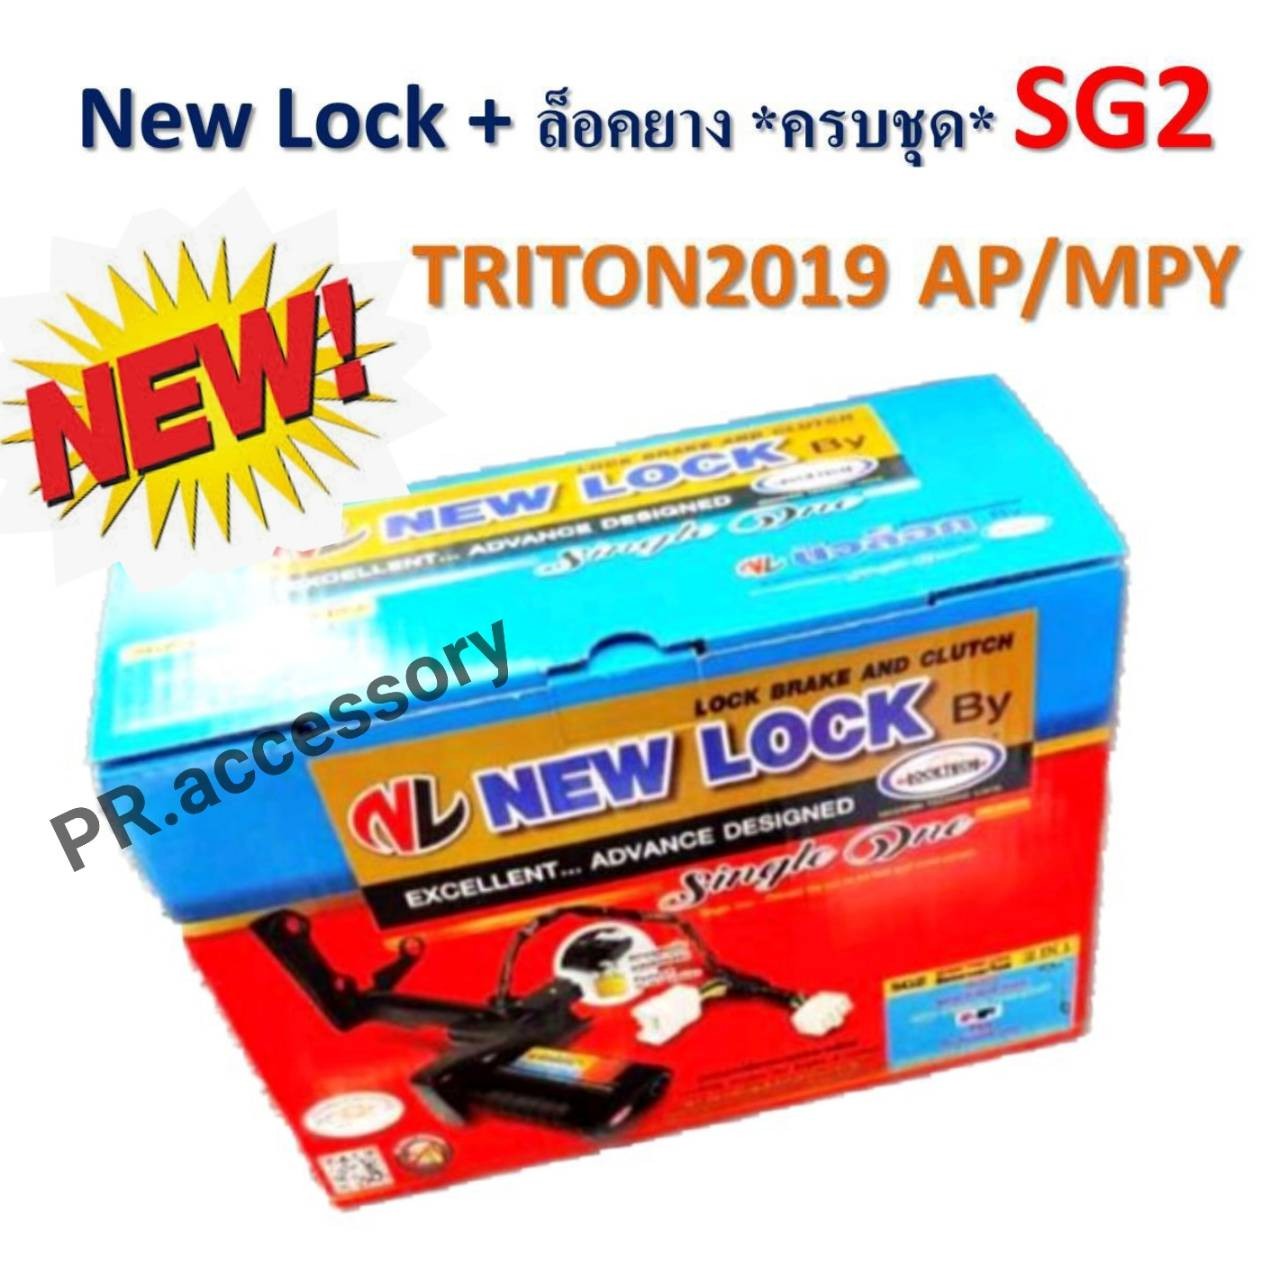 New Lock + ล็อคยางอะไหล่ ระบบกุญแจ ความปลอดภัยสูง SG2 TRITON 2019 AP/MPY